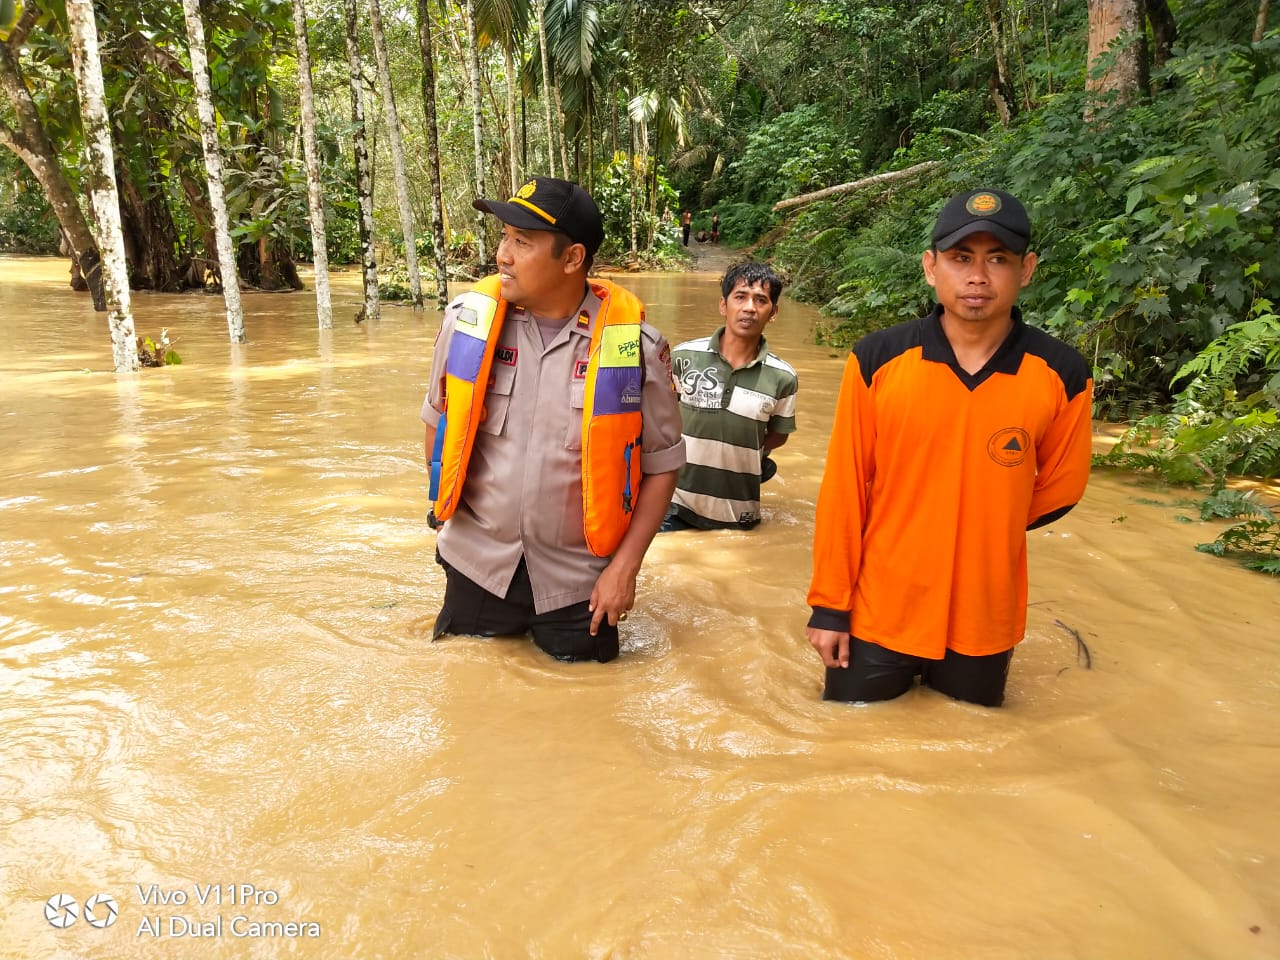 Kapolsek Pulau Punjung bersama anggota melakukan penyisiran ke wilayah terdampak banjir guna membantu proses evakuasi warga